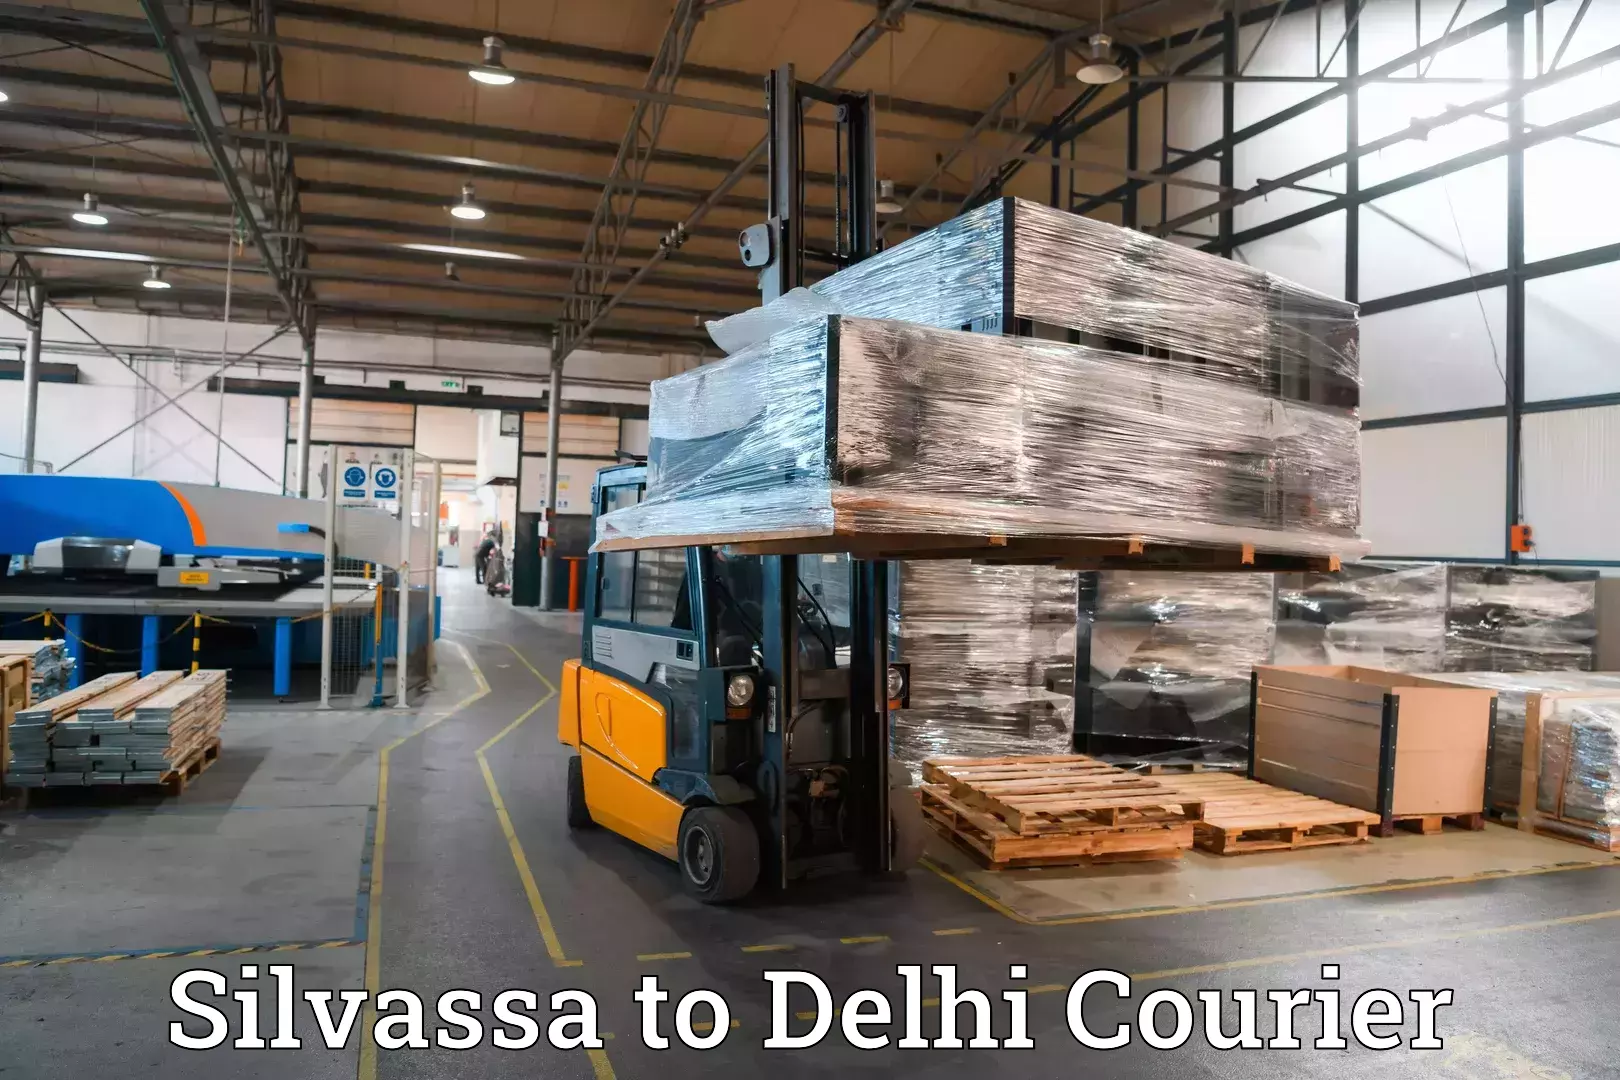 Luggage transfer service Silvassa to Delhi